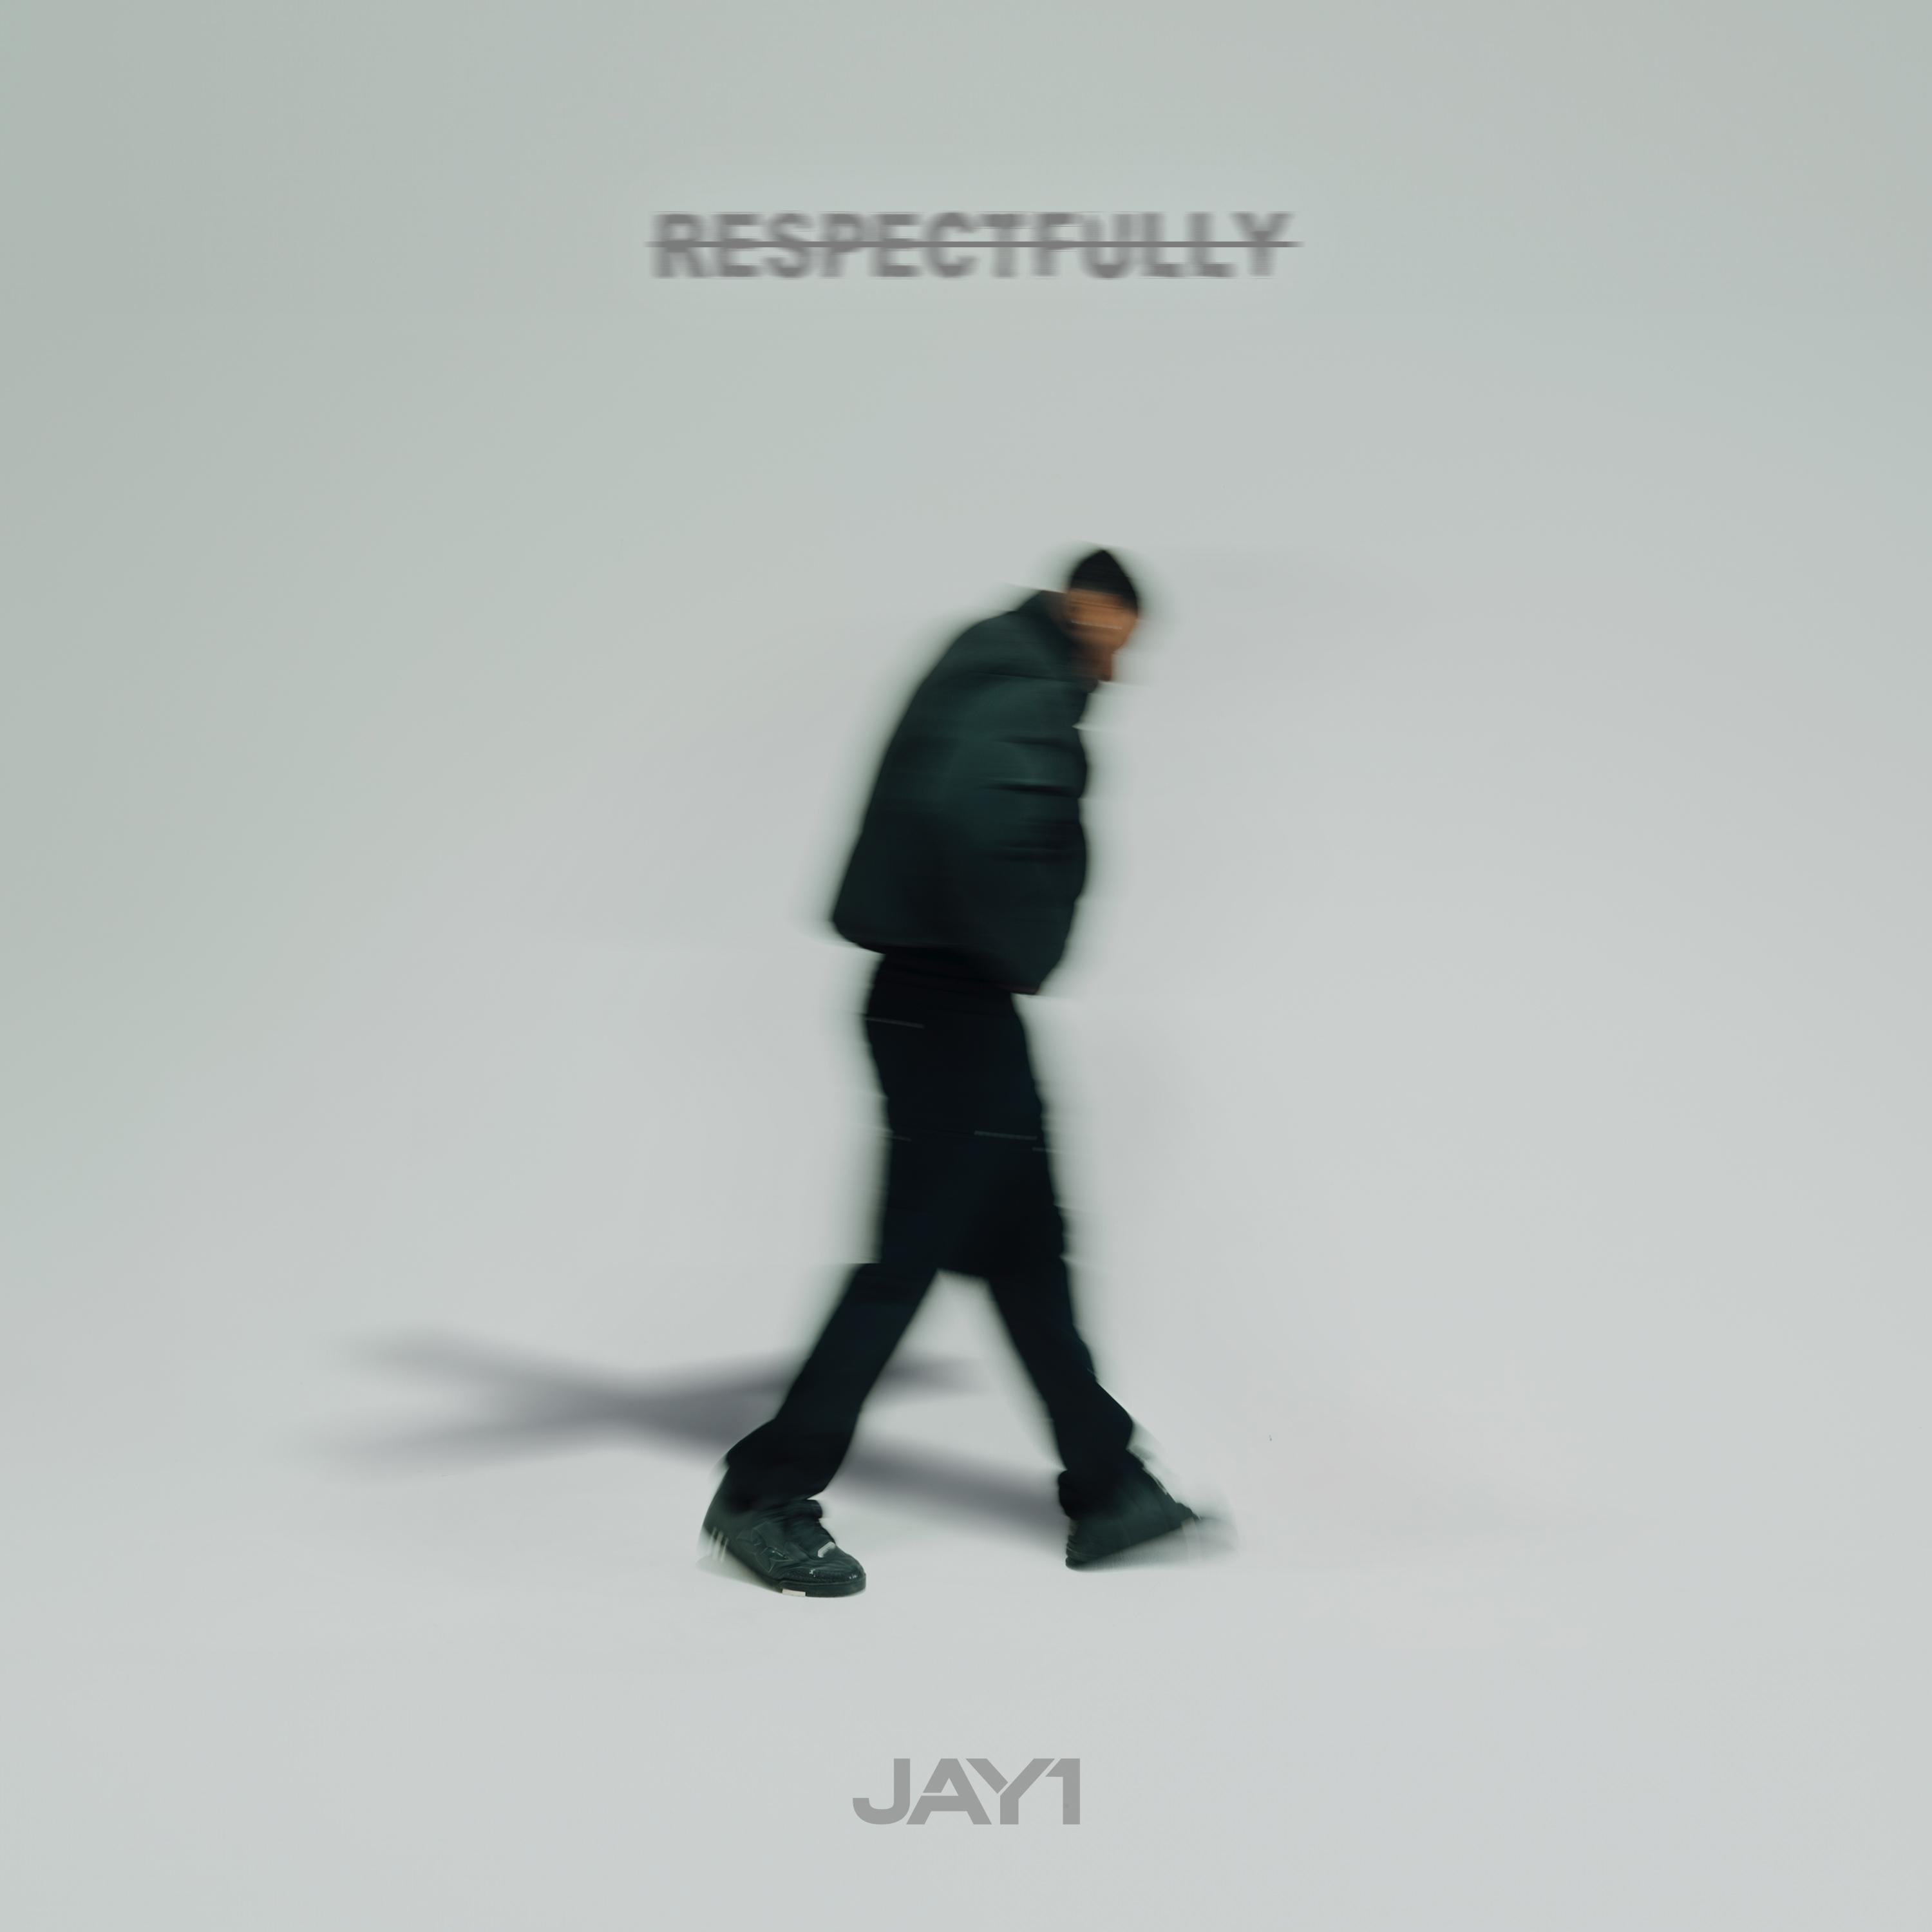 JAY1 - Respectfully